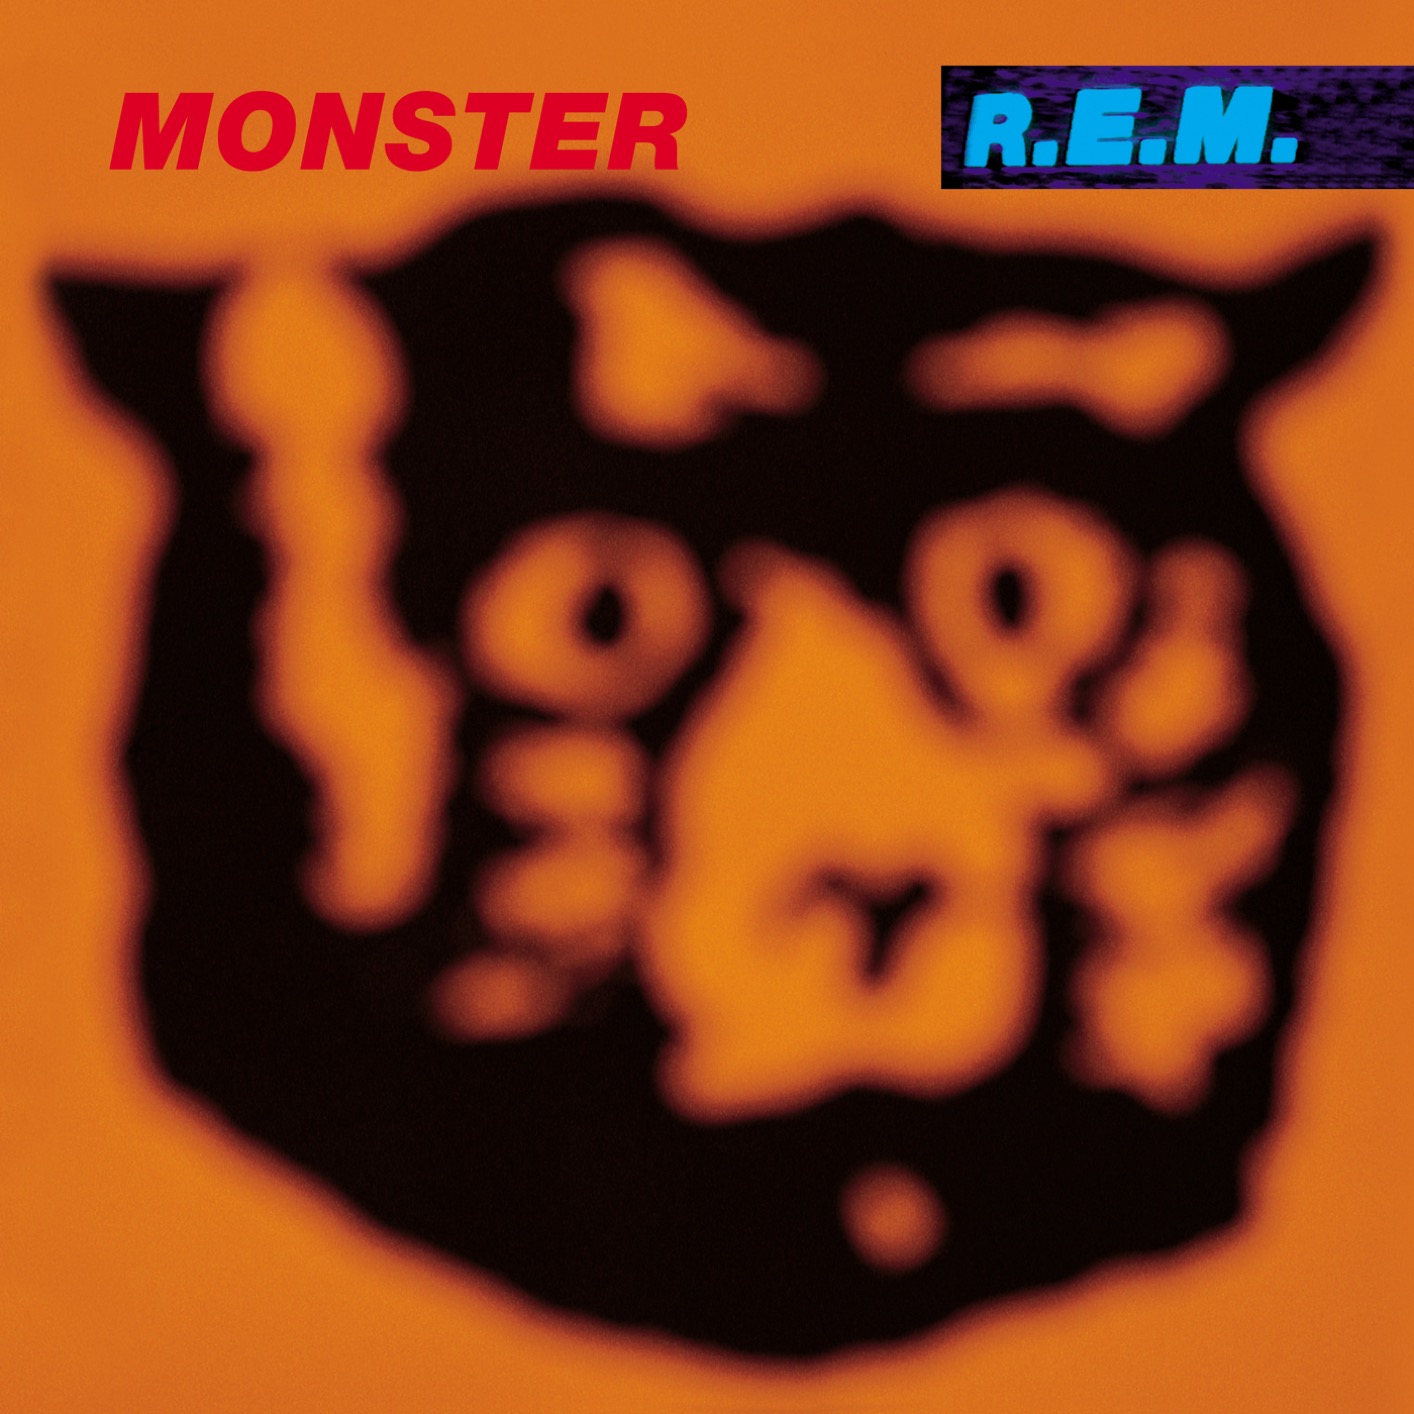 R.E.M. - Monster (Remastered) (1994/2019) [FLAC 24bit/96kHz]